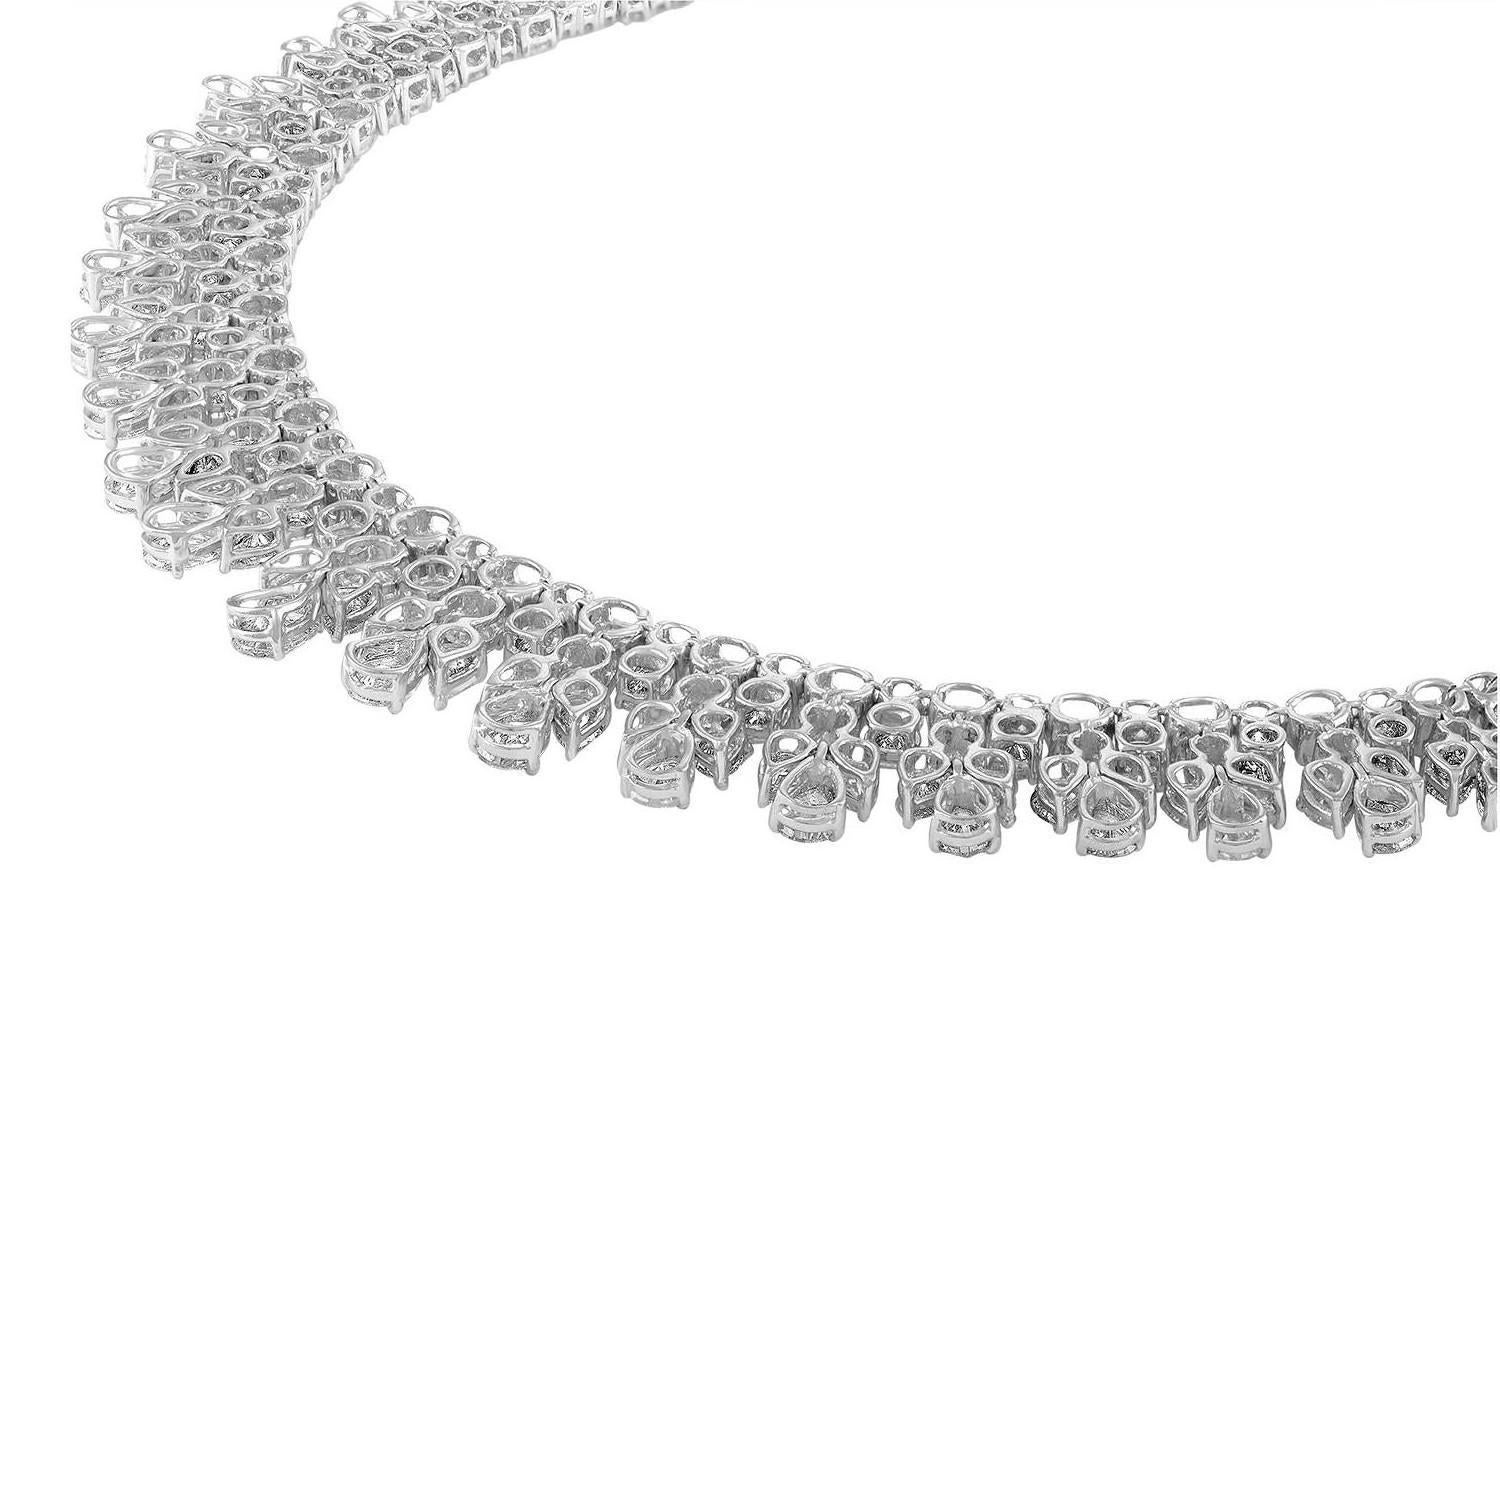 50 carat diamond necklace